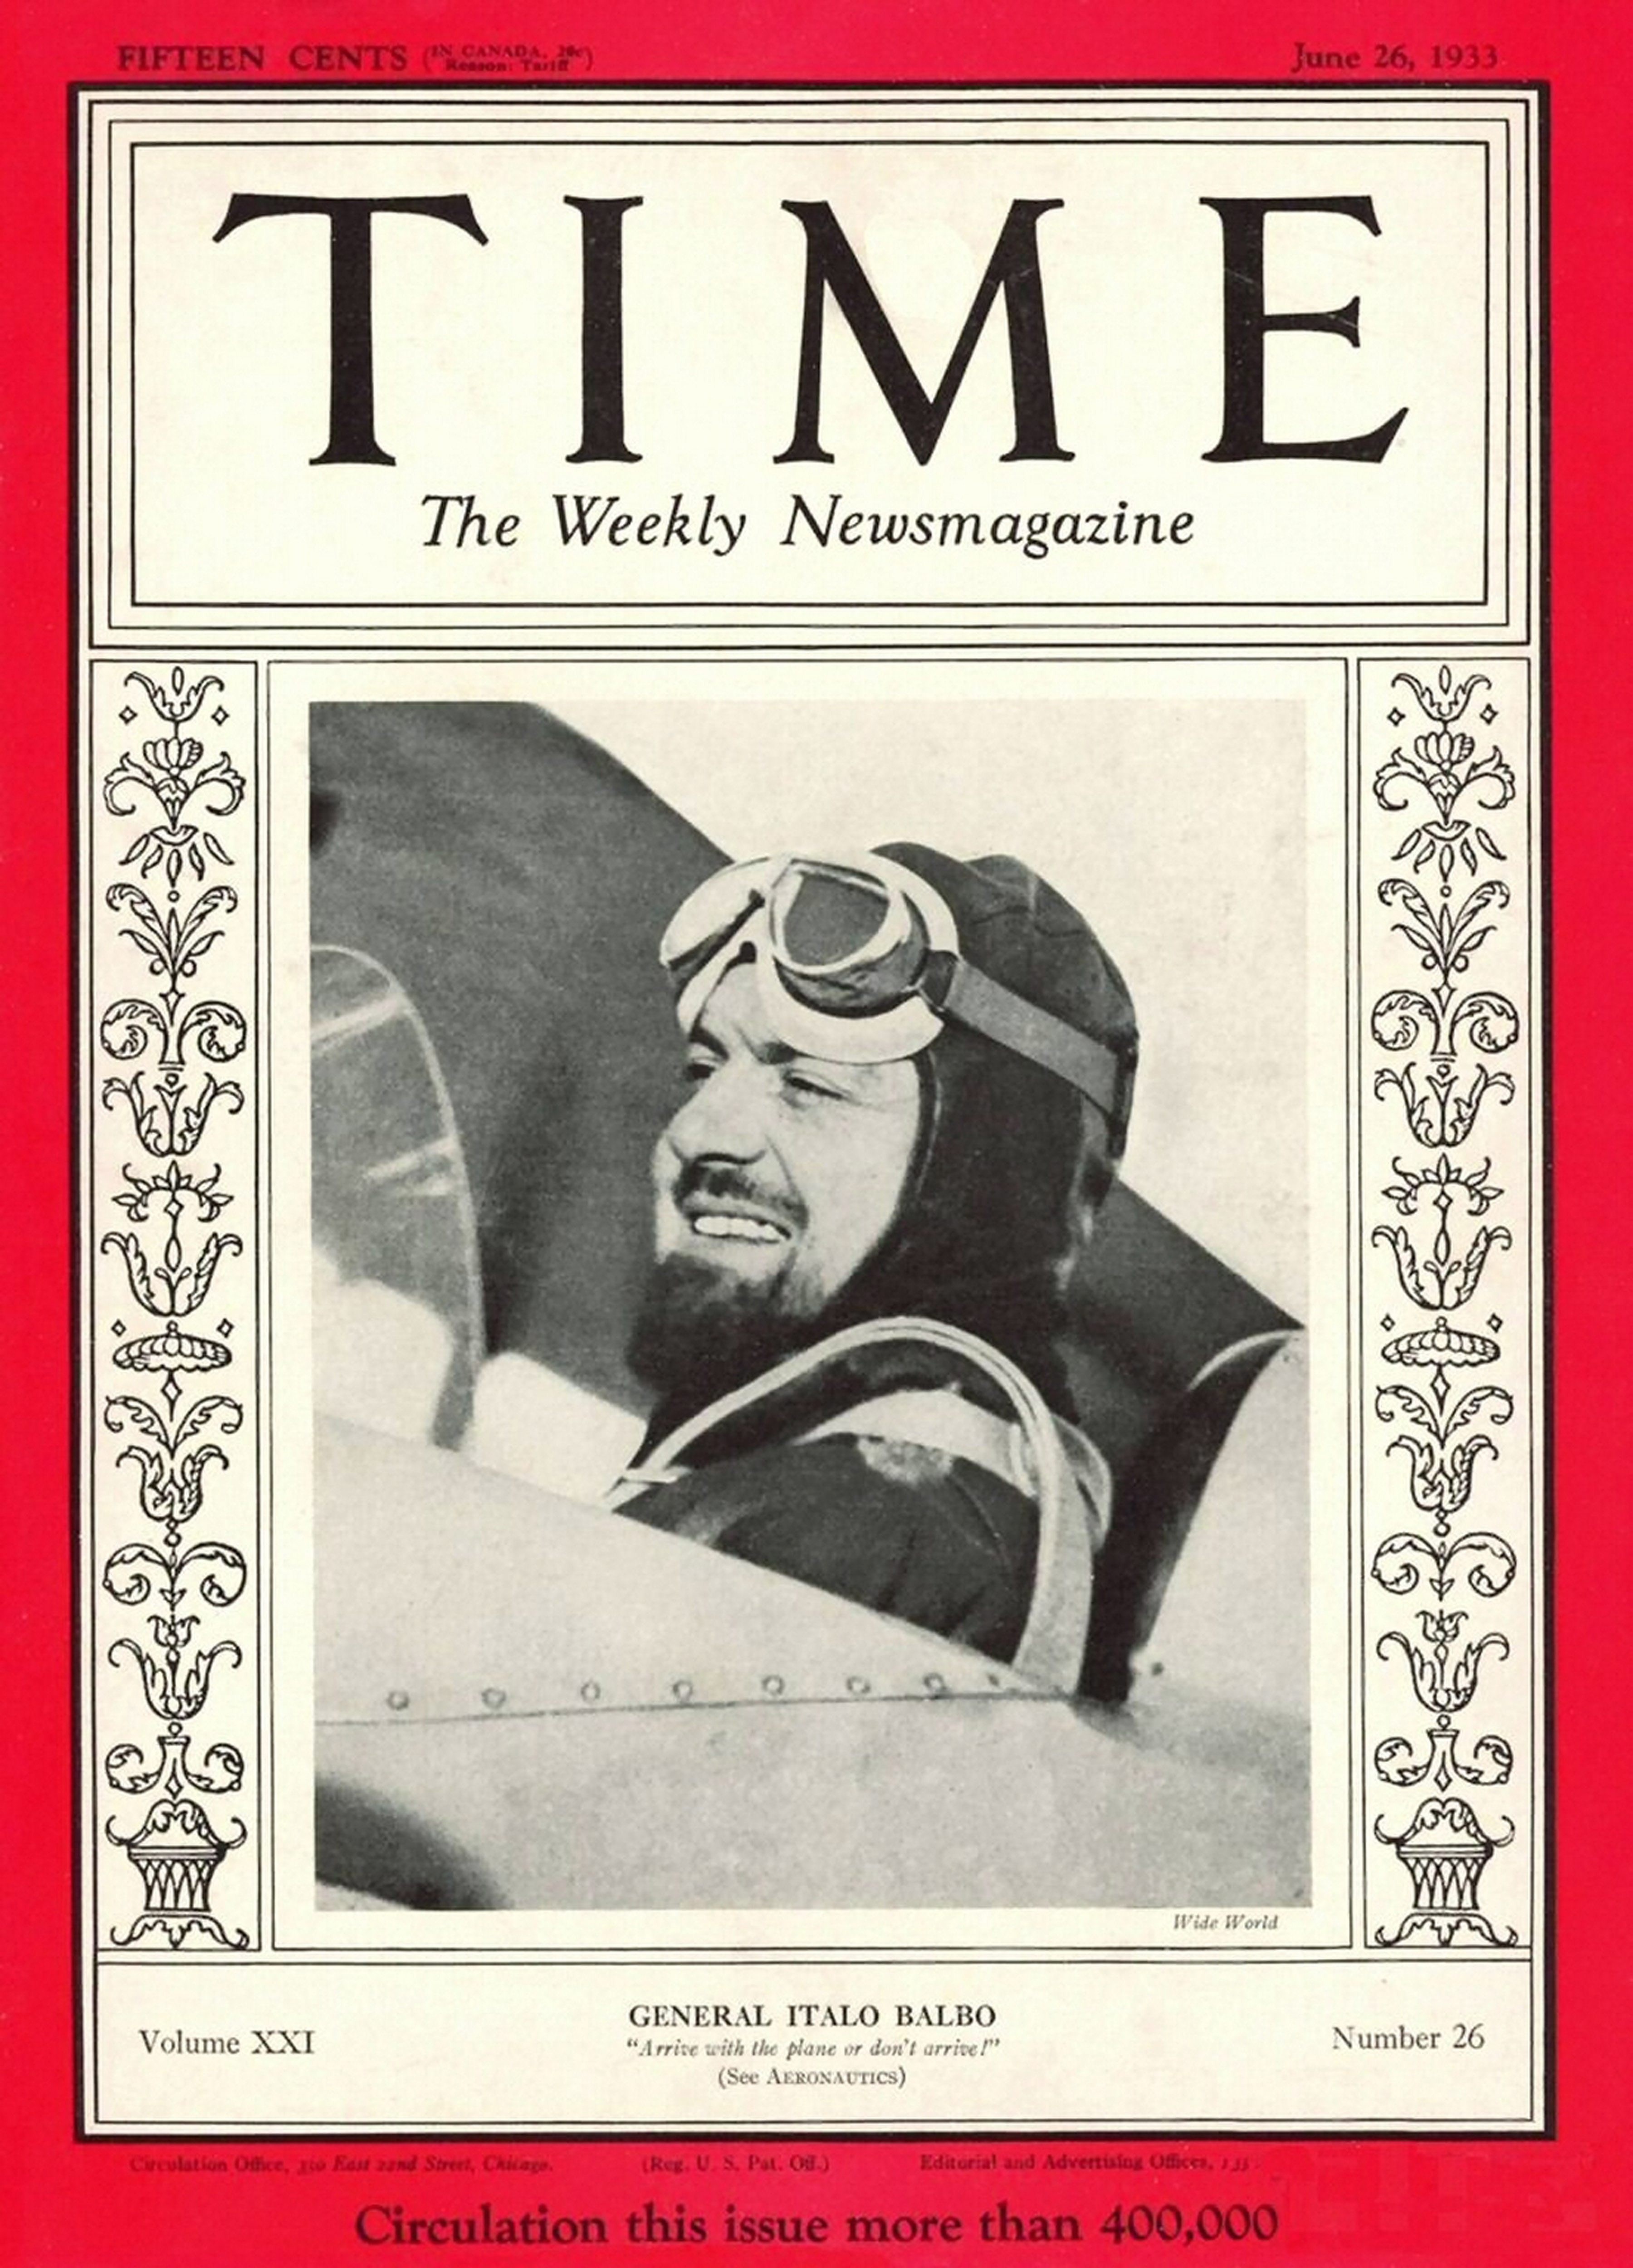 Copertina della rivista Time del 26 giugno 1933 dedicata all'aviatore Italo Balbo. Al suo arrivo a New York verrà accolto trionfalmente e ricevuto anche dal presidente Roosevelt